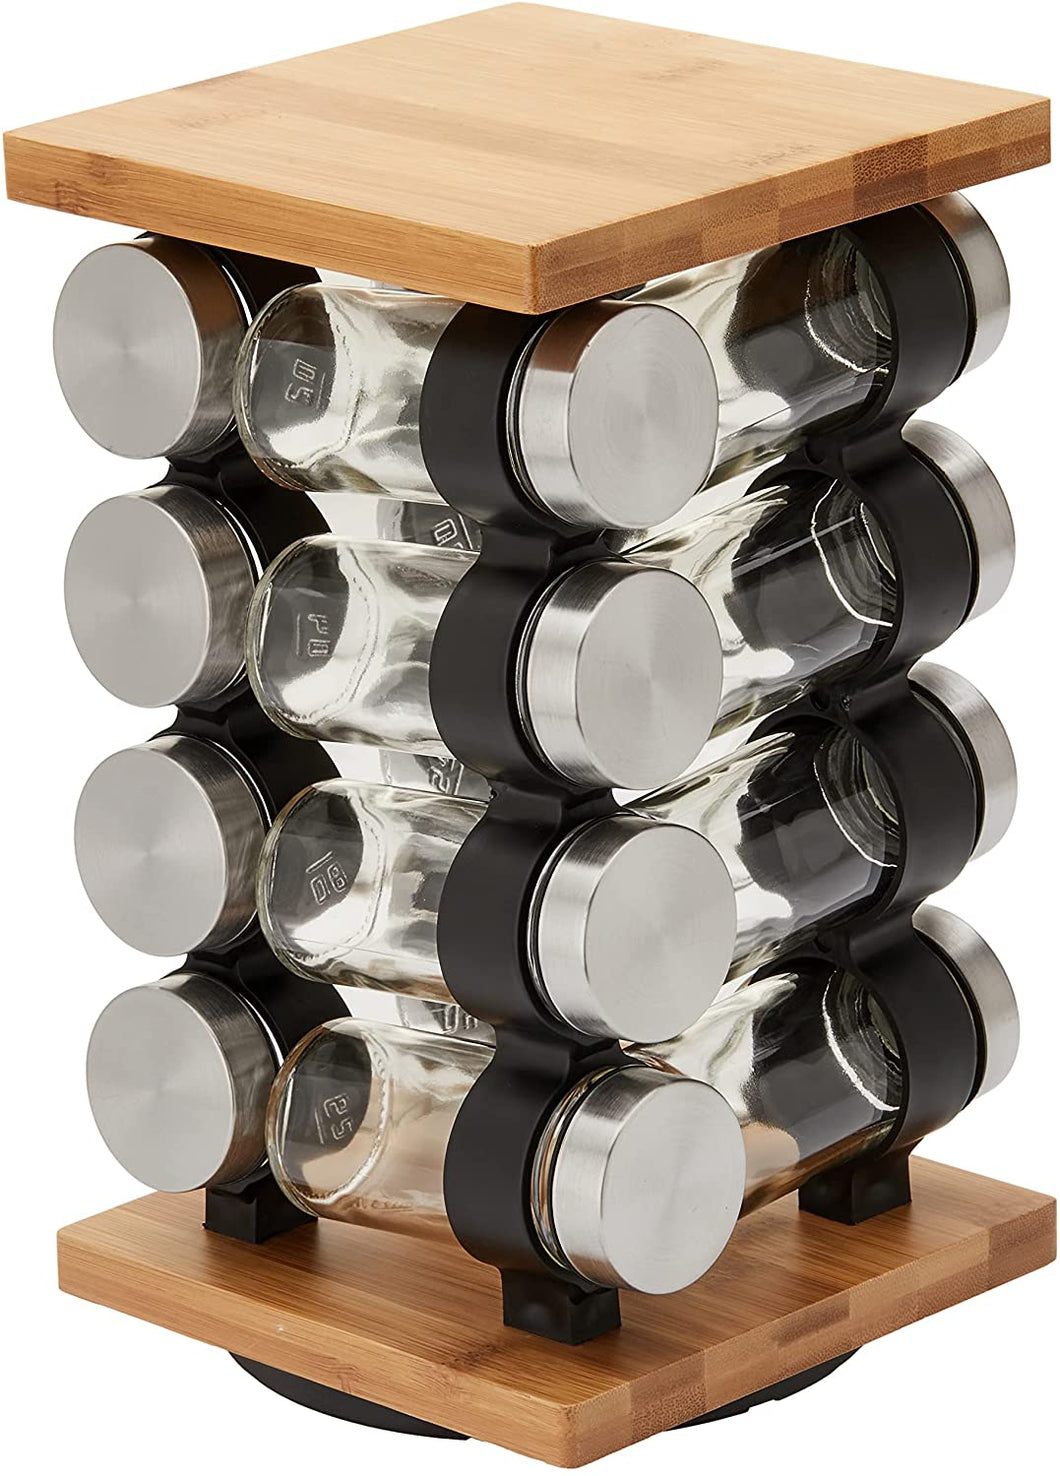 VIKUS Spice Rack Organizer with 12 Pieces Jars for Kitchen